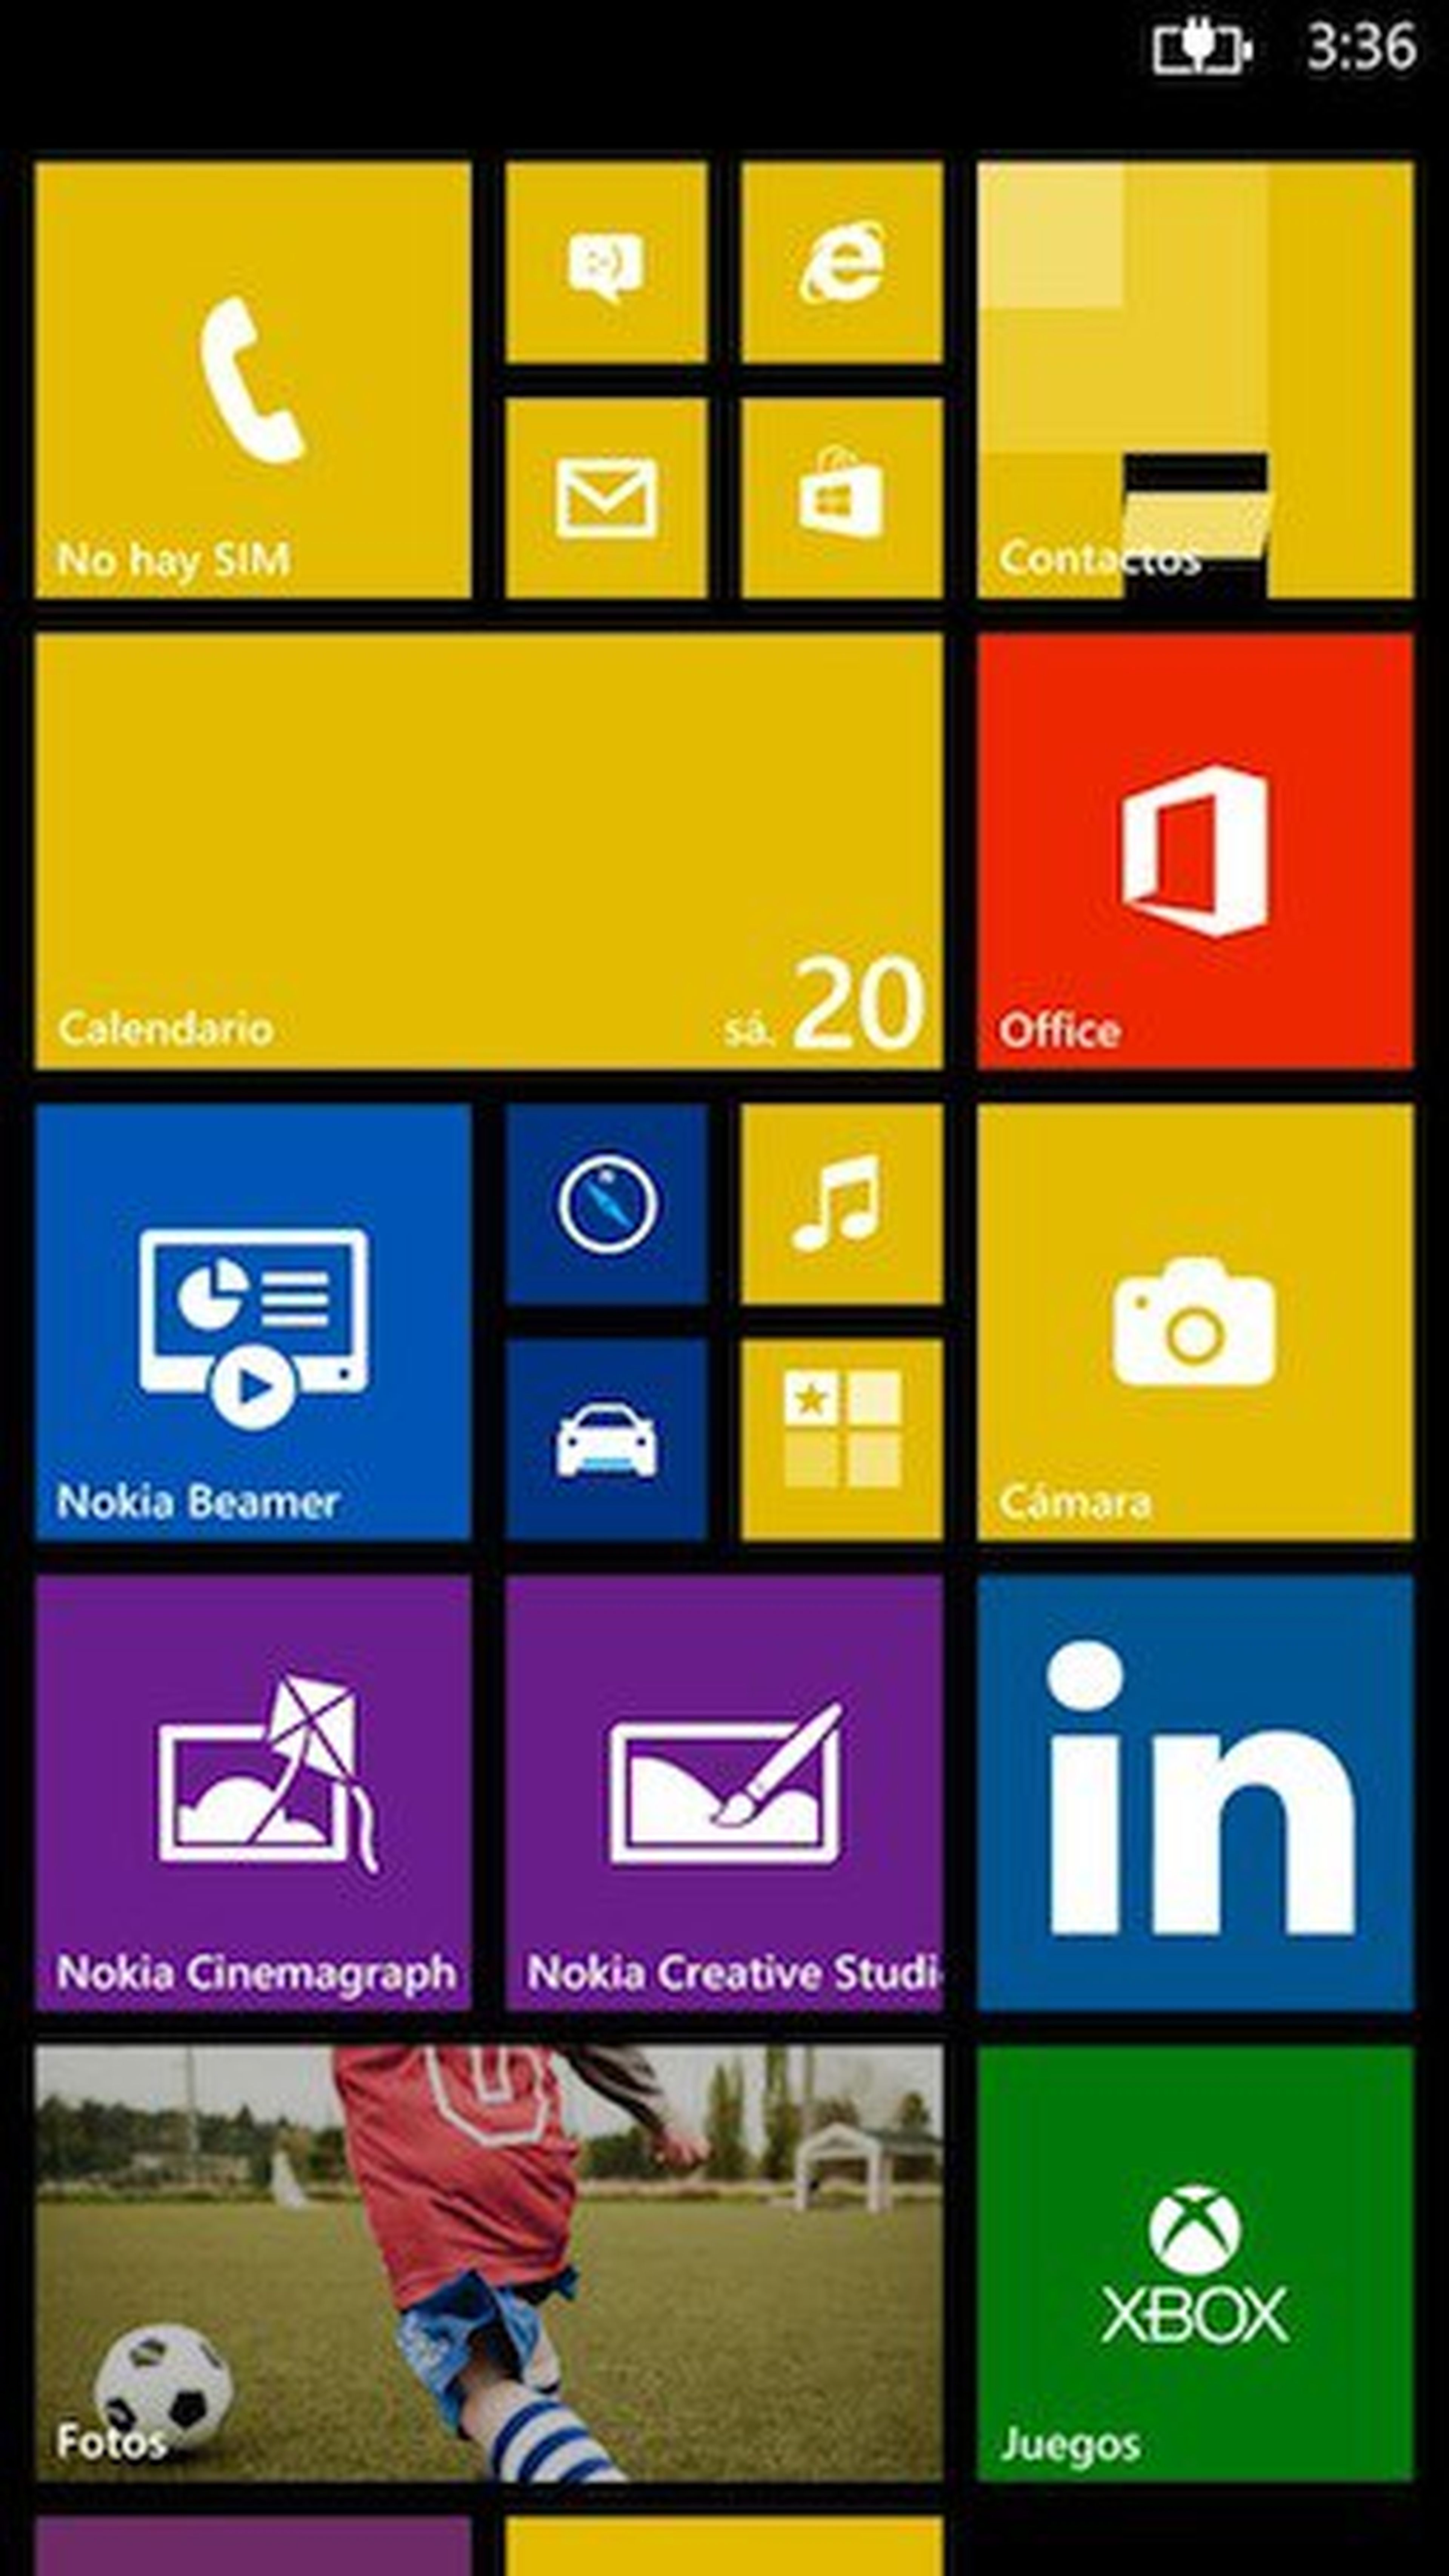 Lumia 1320 windows phone